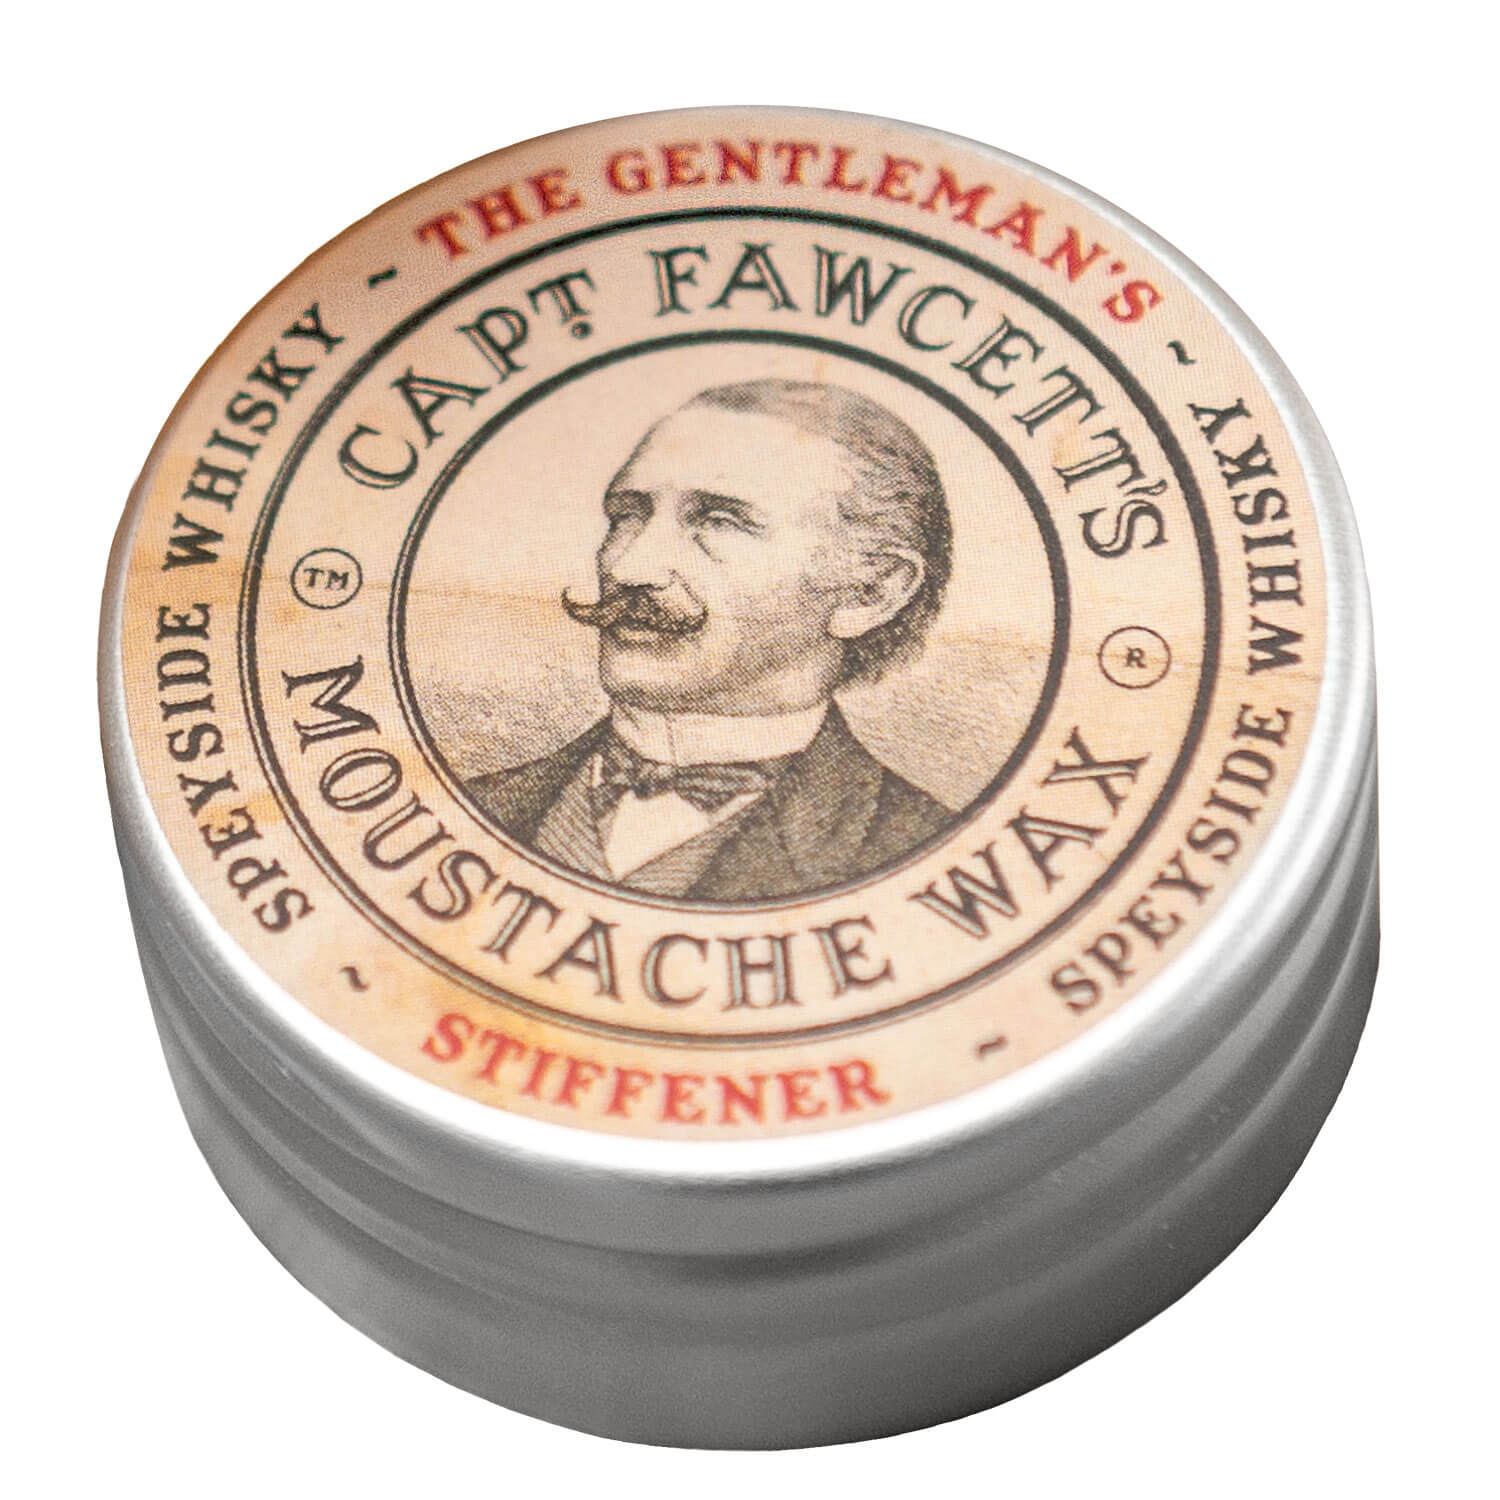 Produktbild von Capt. Fawcett Care - Gentleman's Stiffener Malt Whisky Moustache Wax